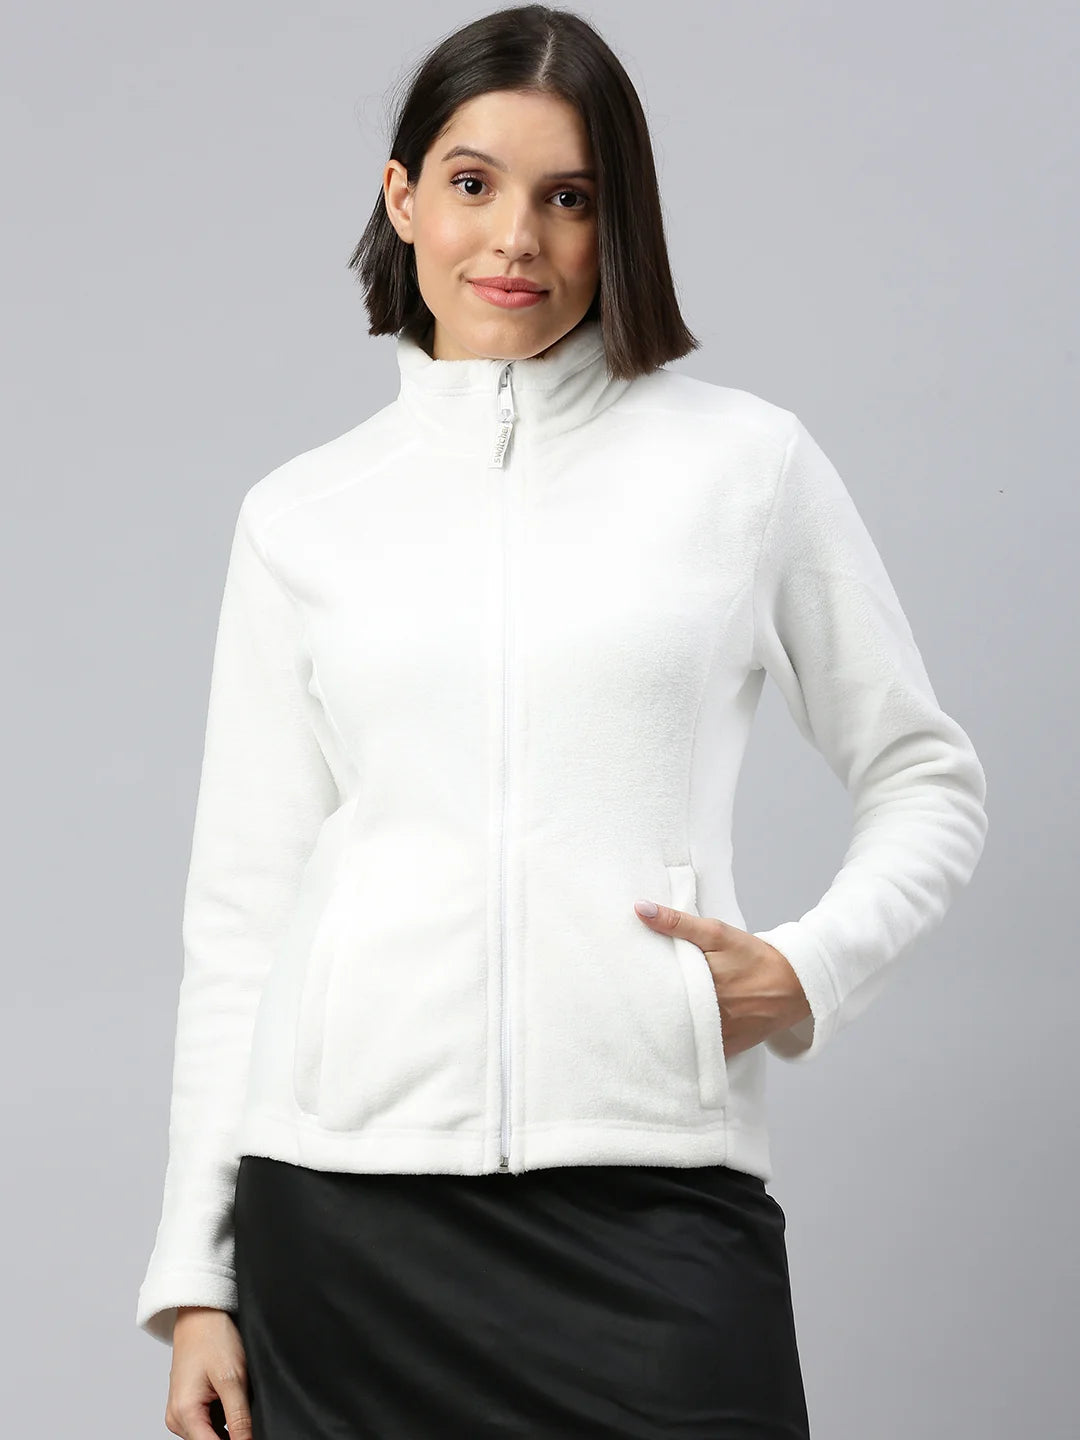 femmes-montreal-polyester-veste-polaire-blanc-casse-avant